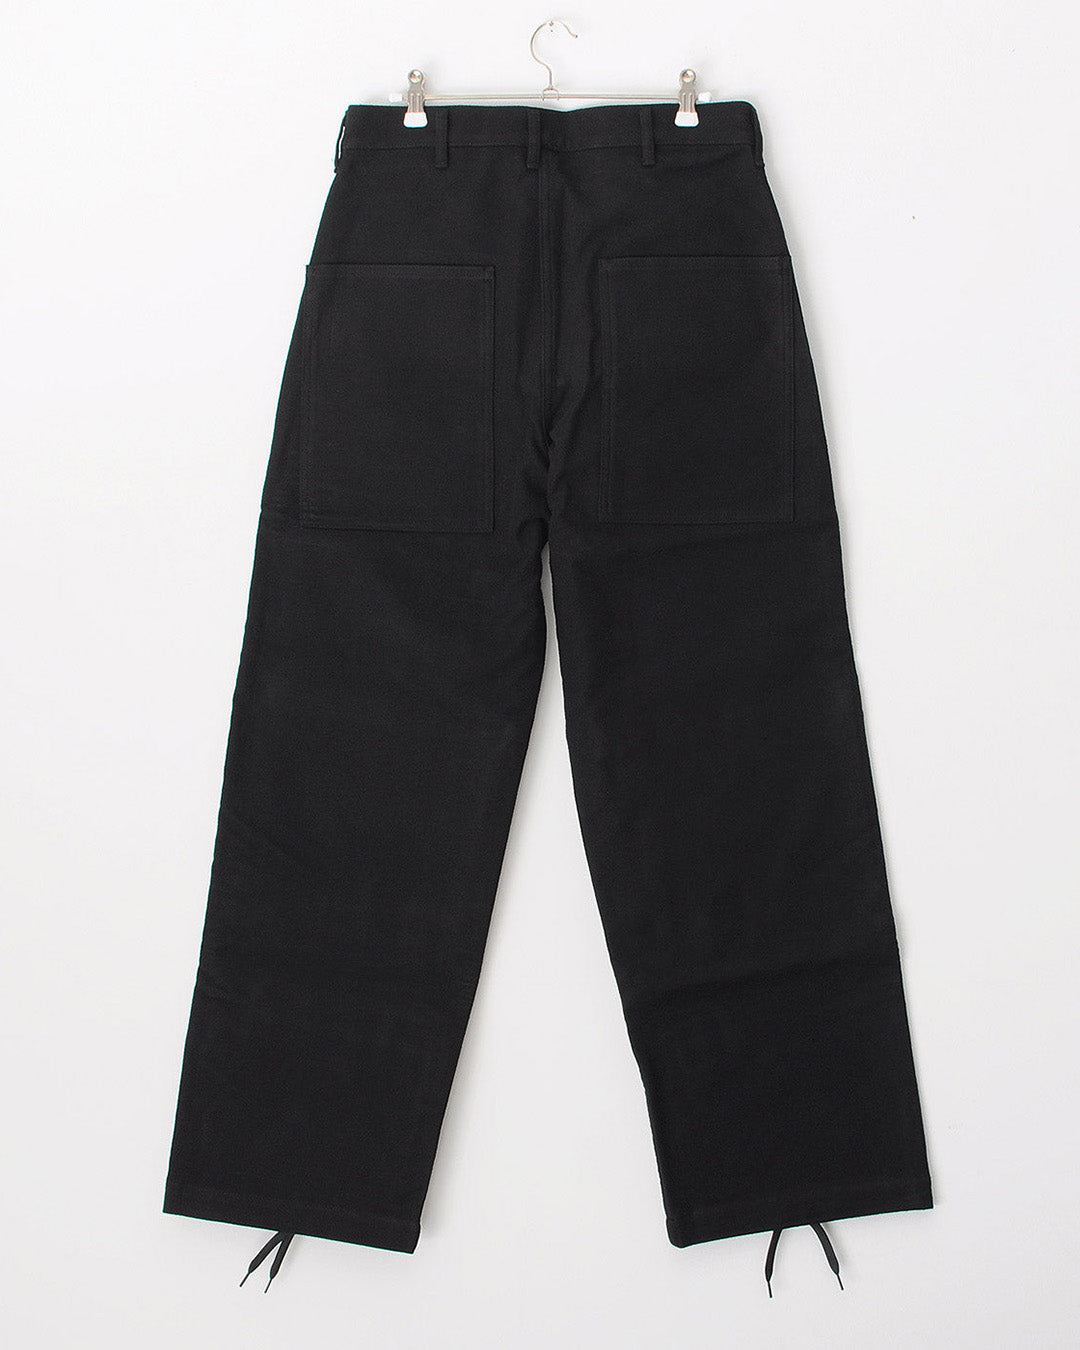 TUKI double knee pants / black / cotton melton